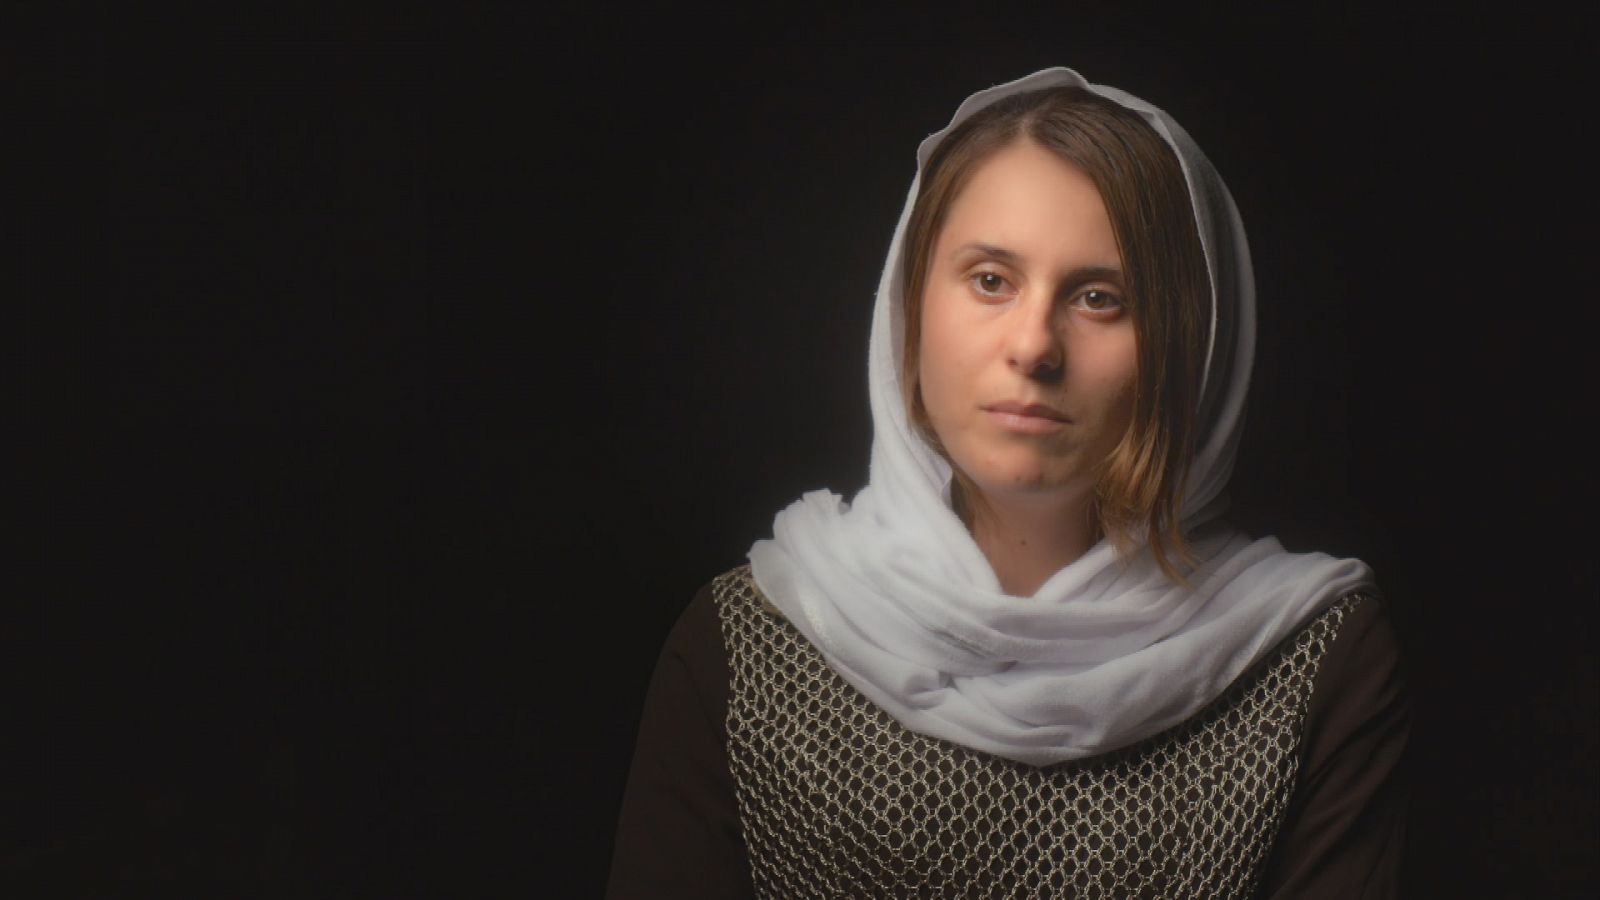 La noche temática - Fui una esclava yazidí - Documental en RTVE